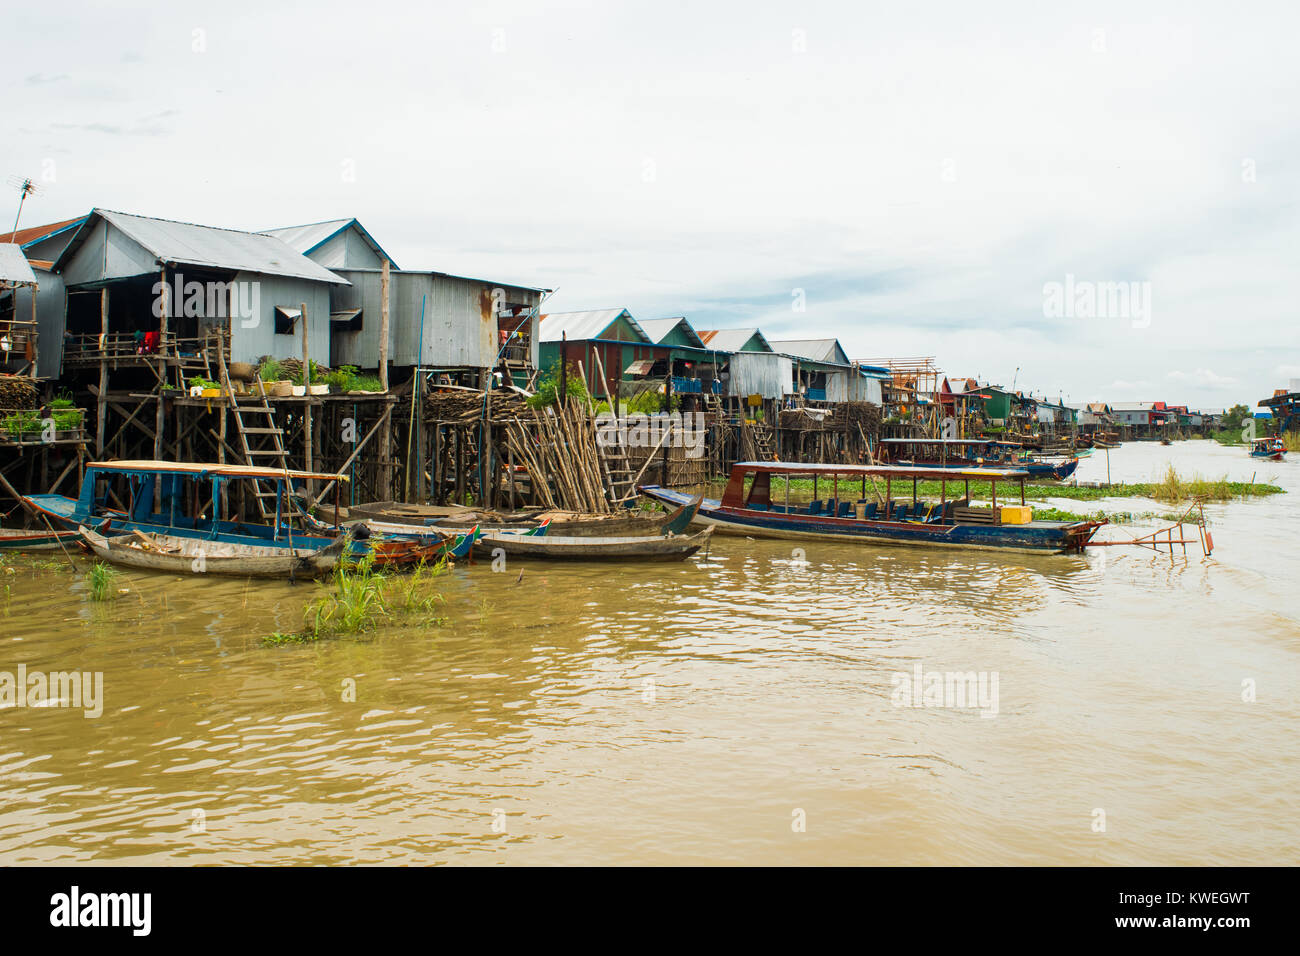 Bois et métal noyé inondé de règlement village sur pilotis, Kampong Phluk village flottant, Tonle Sap Lake, Siem Reap, Cambodge, Asie du sud-est Banque D'Images